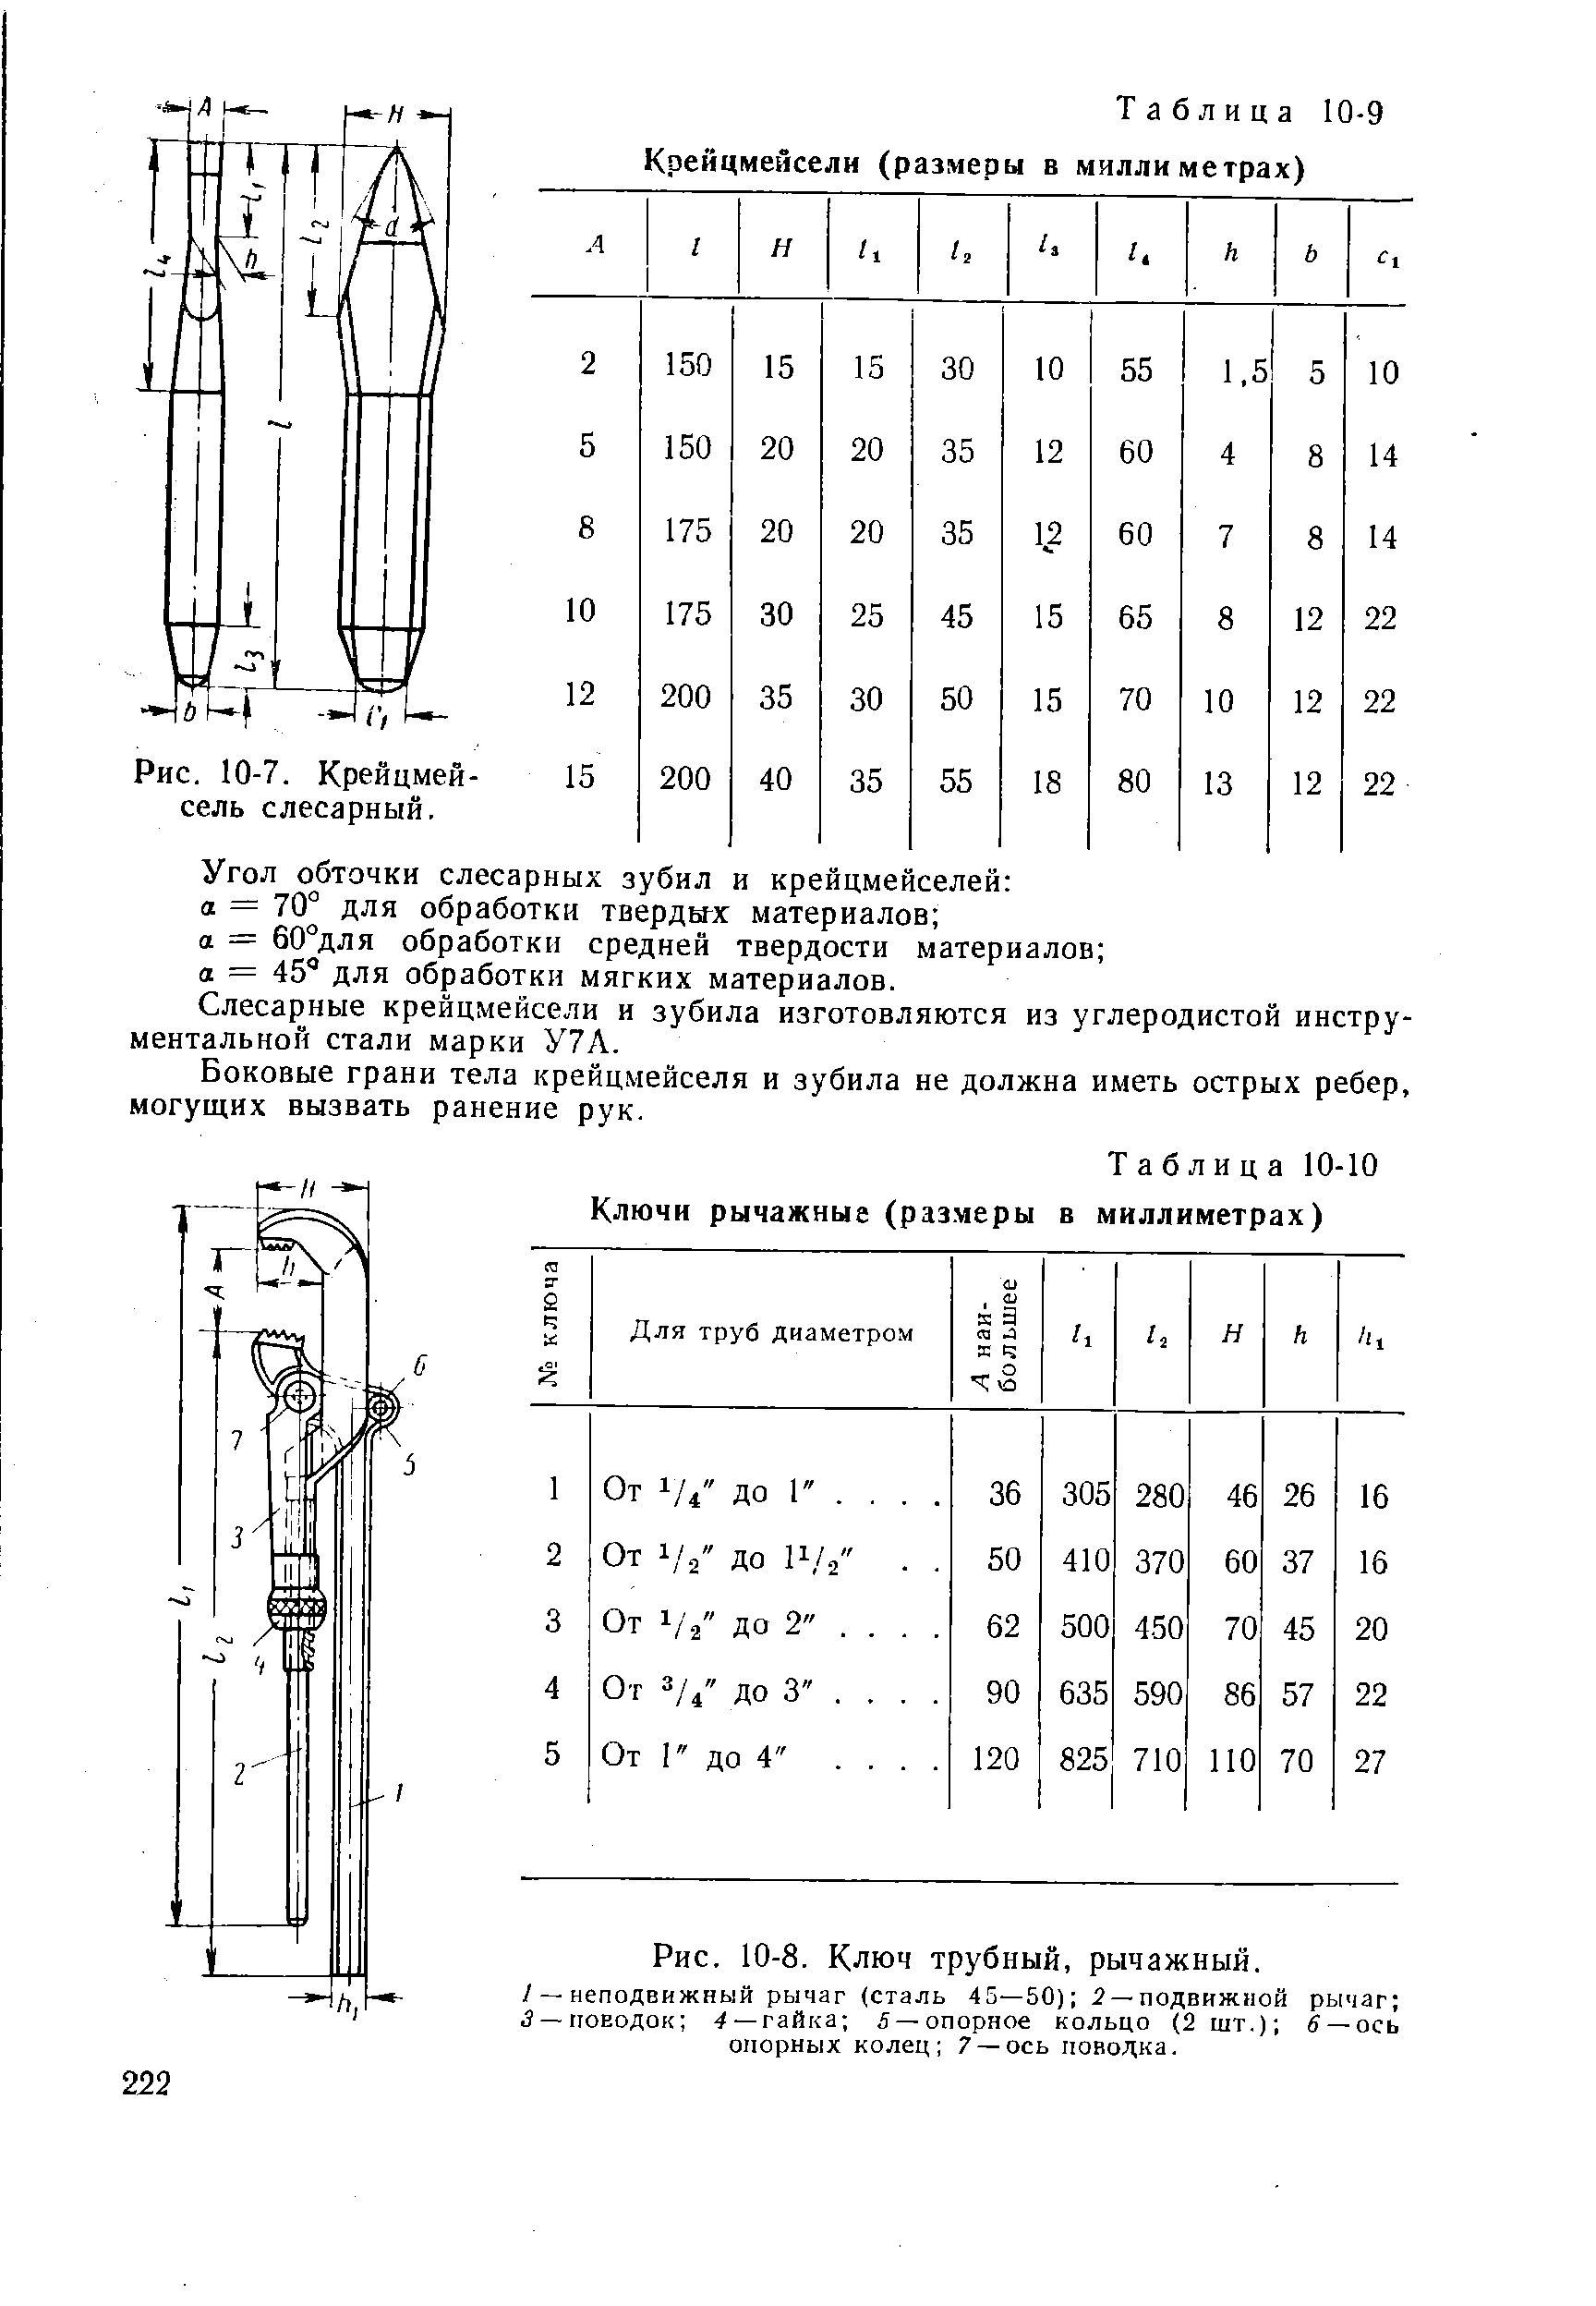 Таблица 10-9 Крейцмейсели (размеры в миллиметрах)
